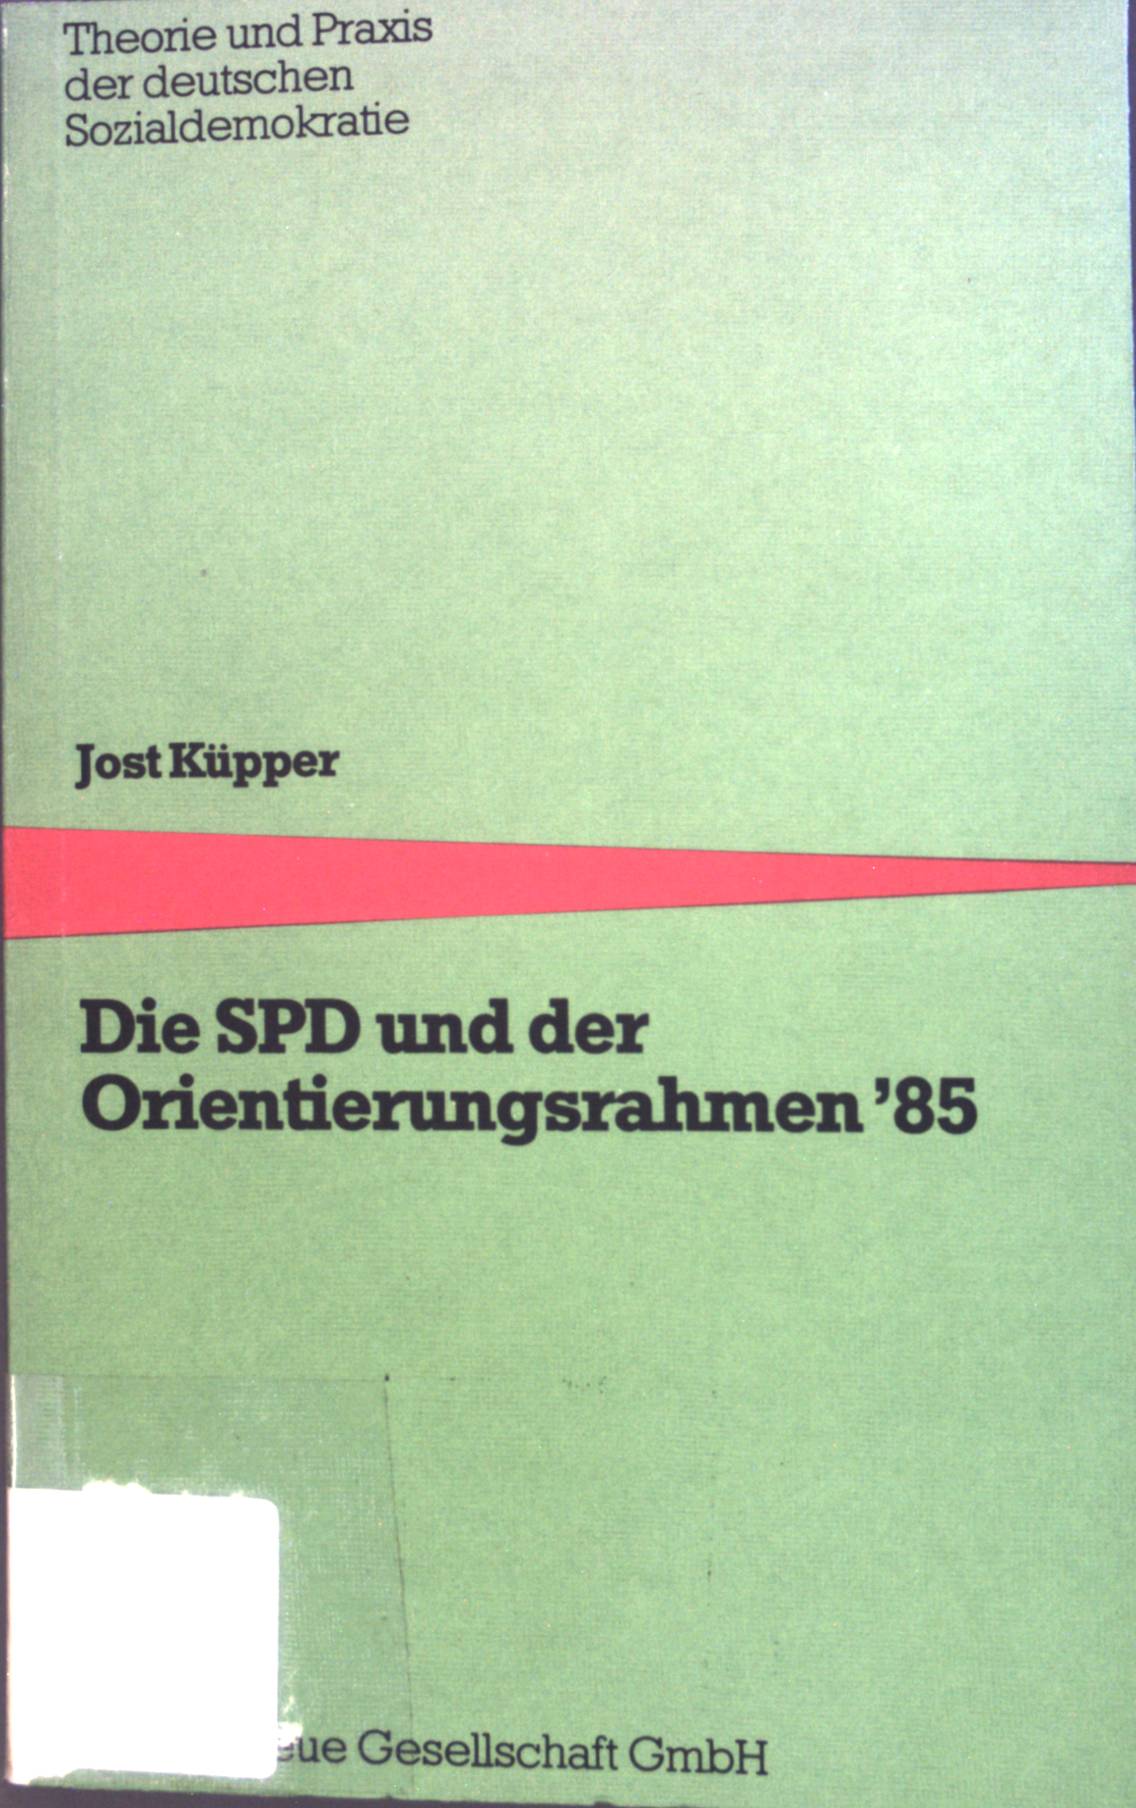 Die SPD und der Orientierungsrahmen '85 [fünfundachtzig]. Theorie und Praxis der deutschen Sozialdemokratie - Küpper, Jost